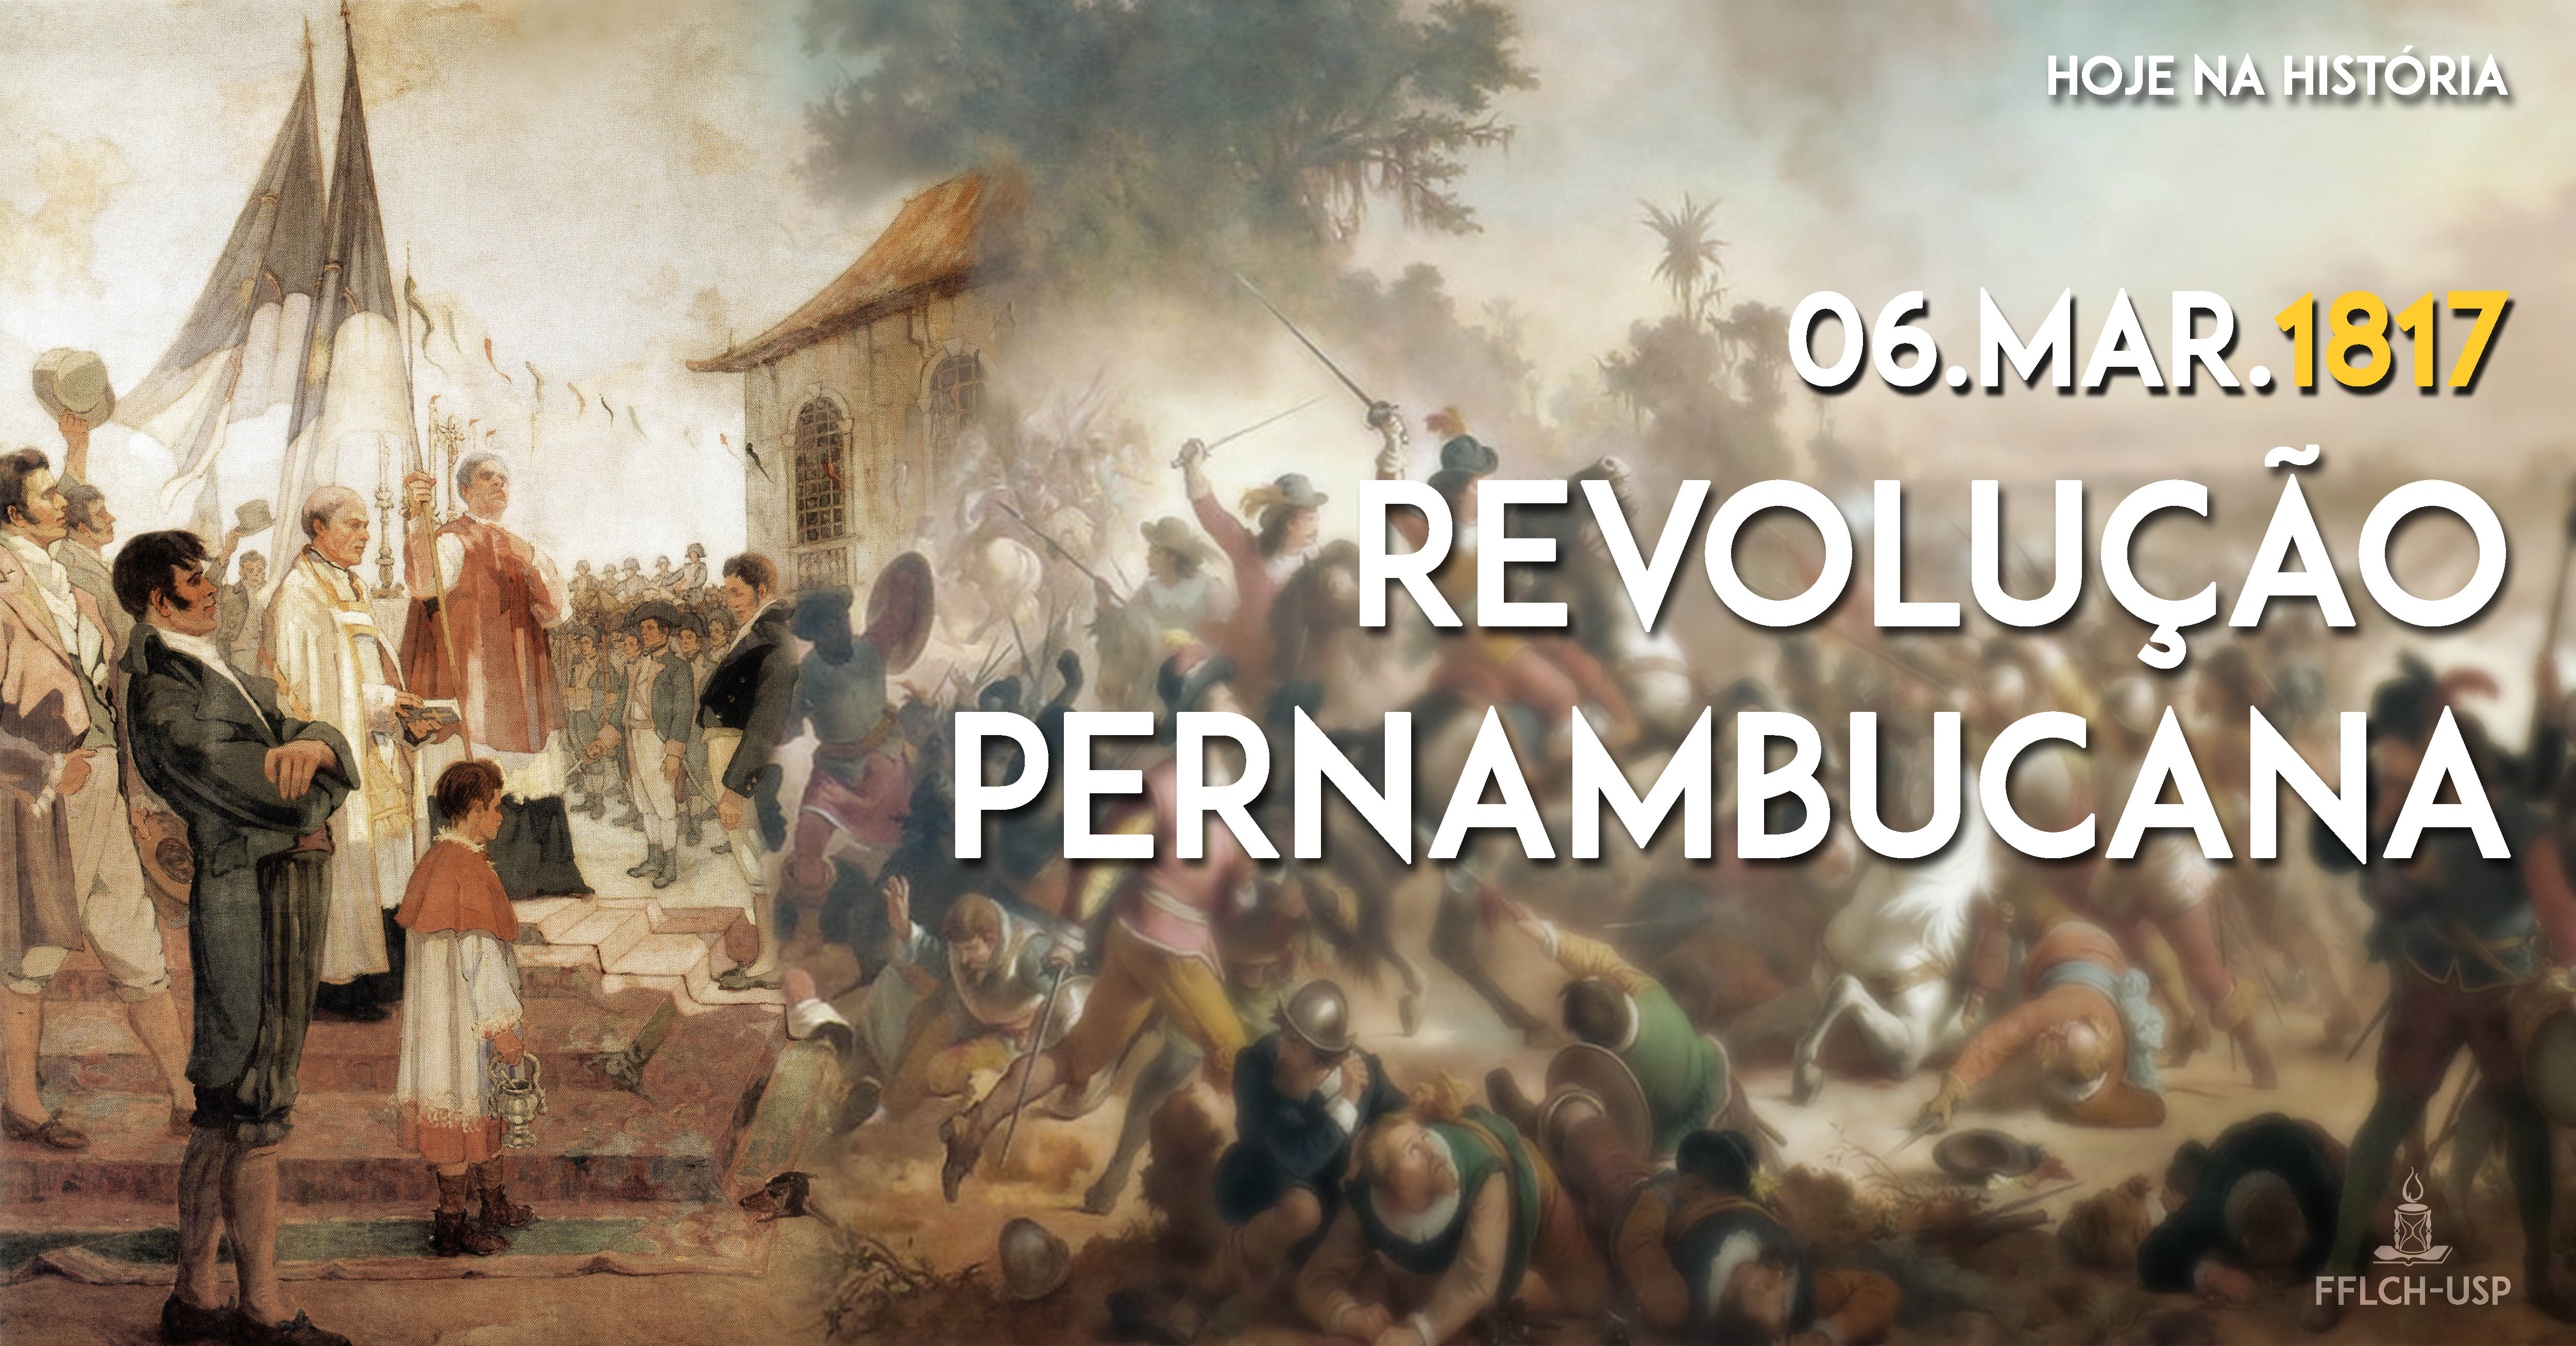 Mesmo não sendo bem sucedida, a Revolução Pernambucana trouxe à tona questões abolicionistas e de mudança social e econômica para além da região de Pernambuco